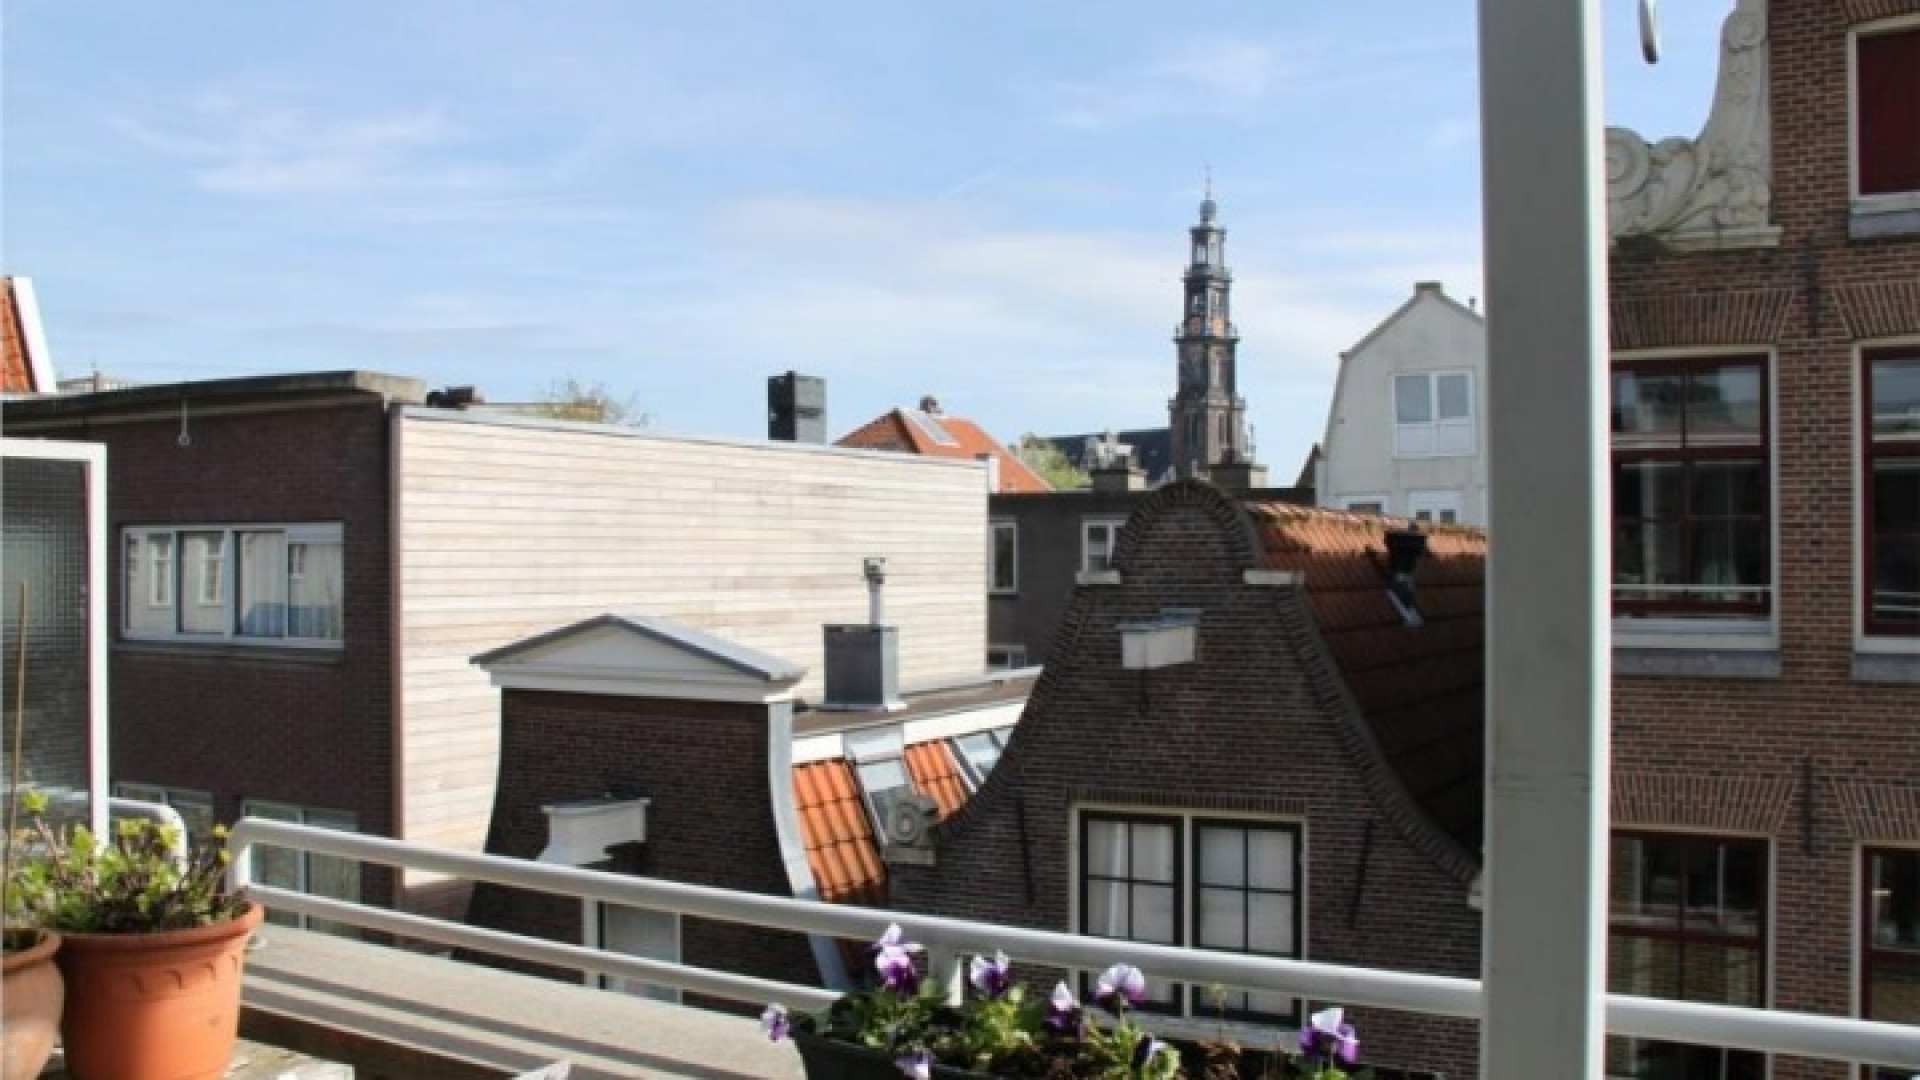 Frank Evenblij haalt zijn huis in de Amsterdamse Jordaan uit de verkoop. Zie foto's 17